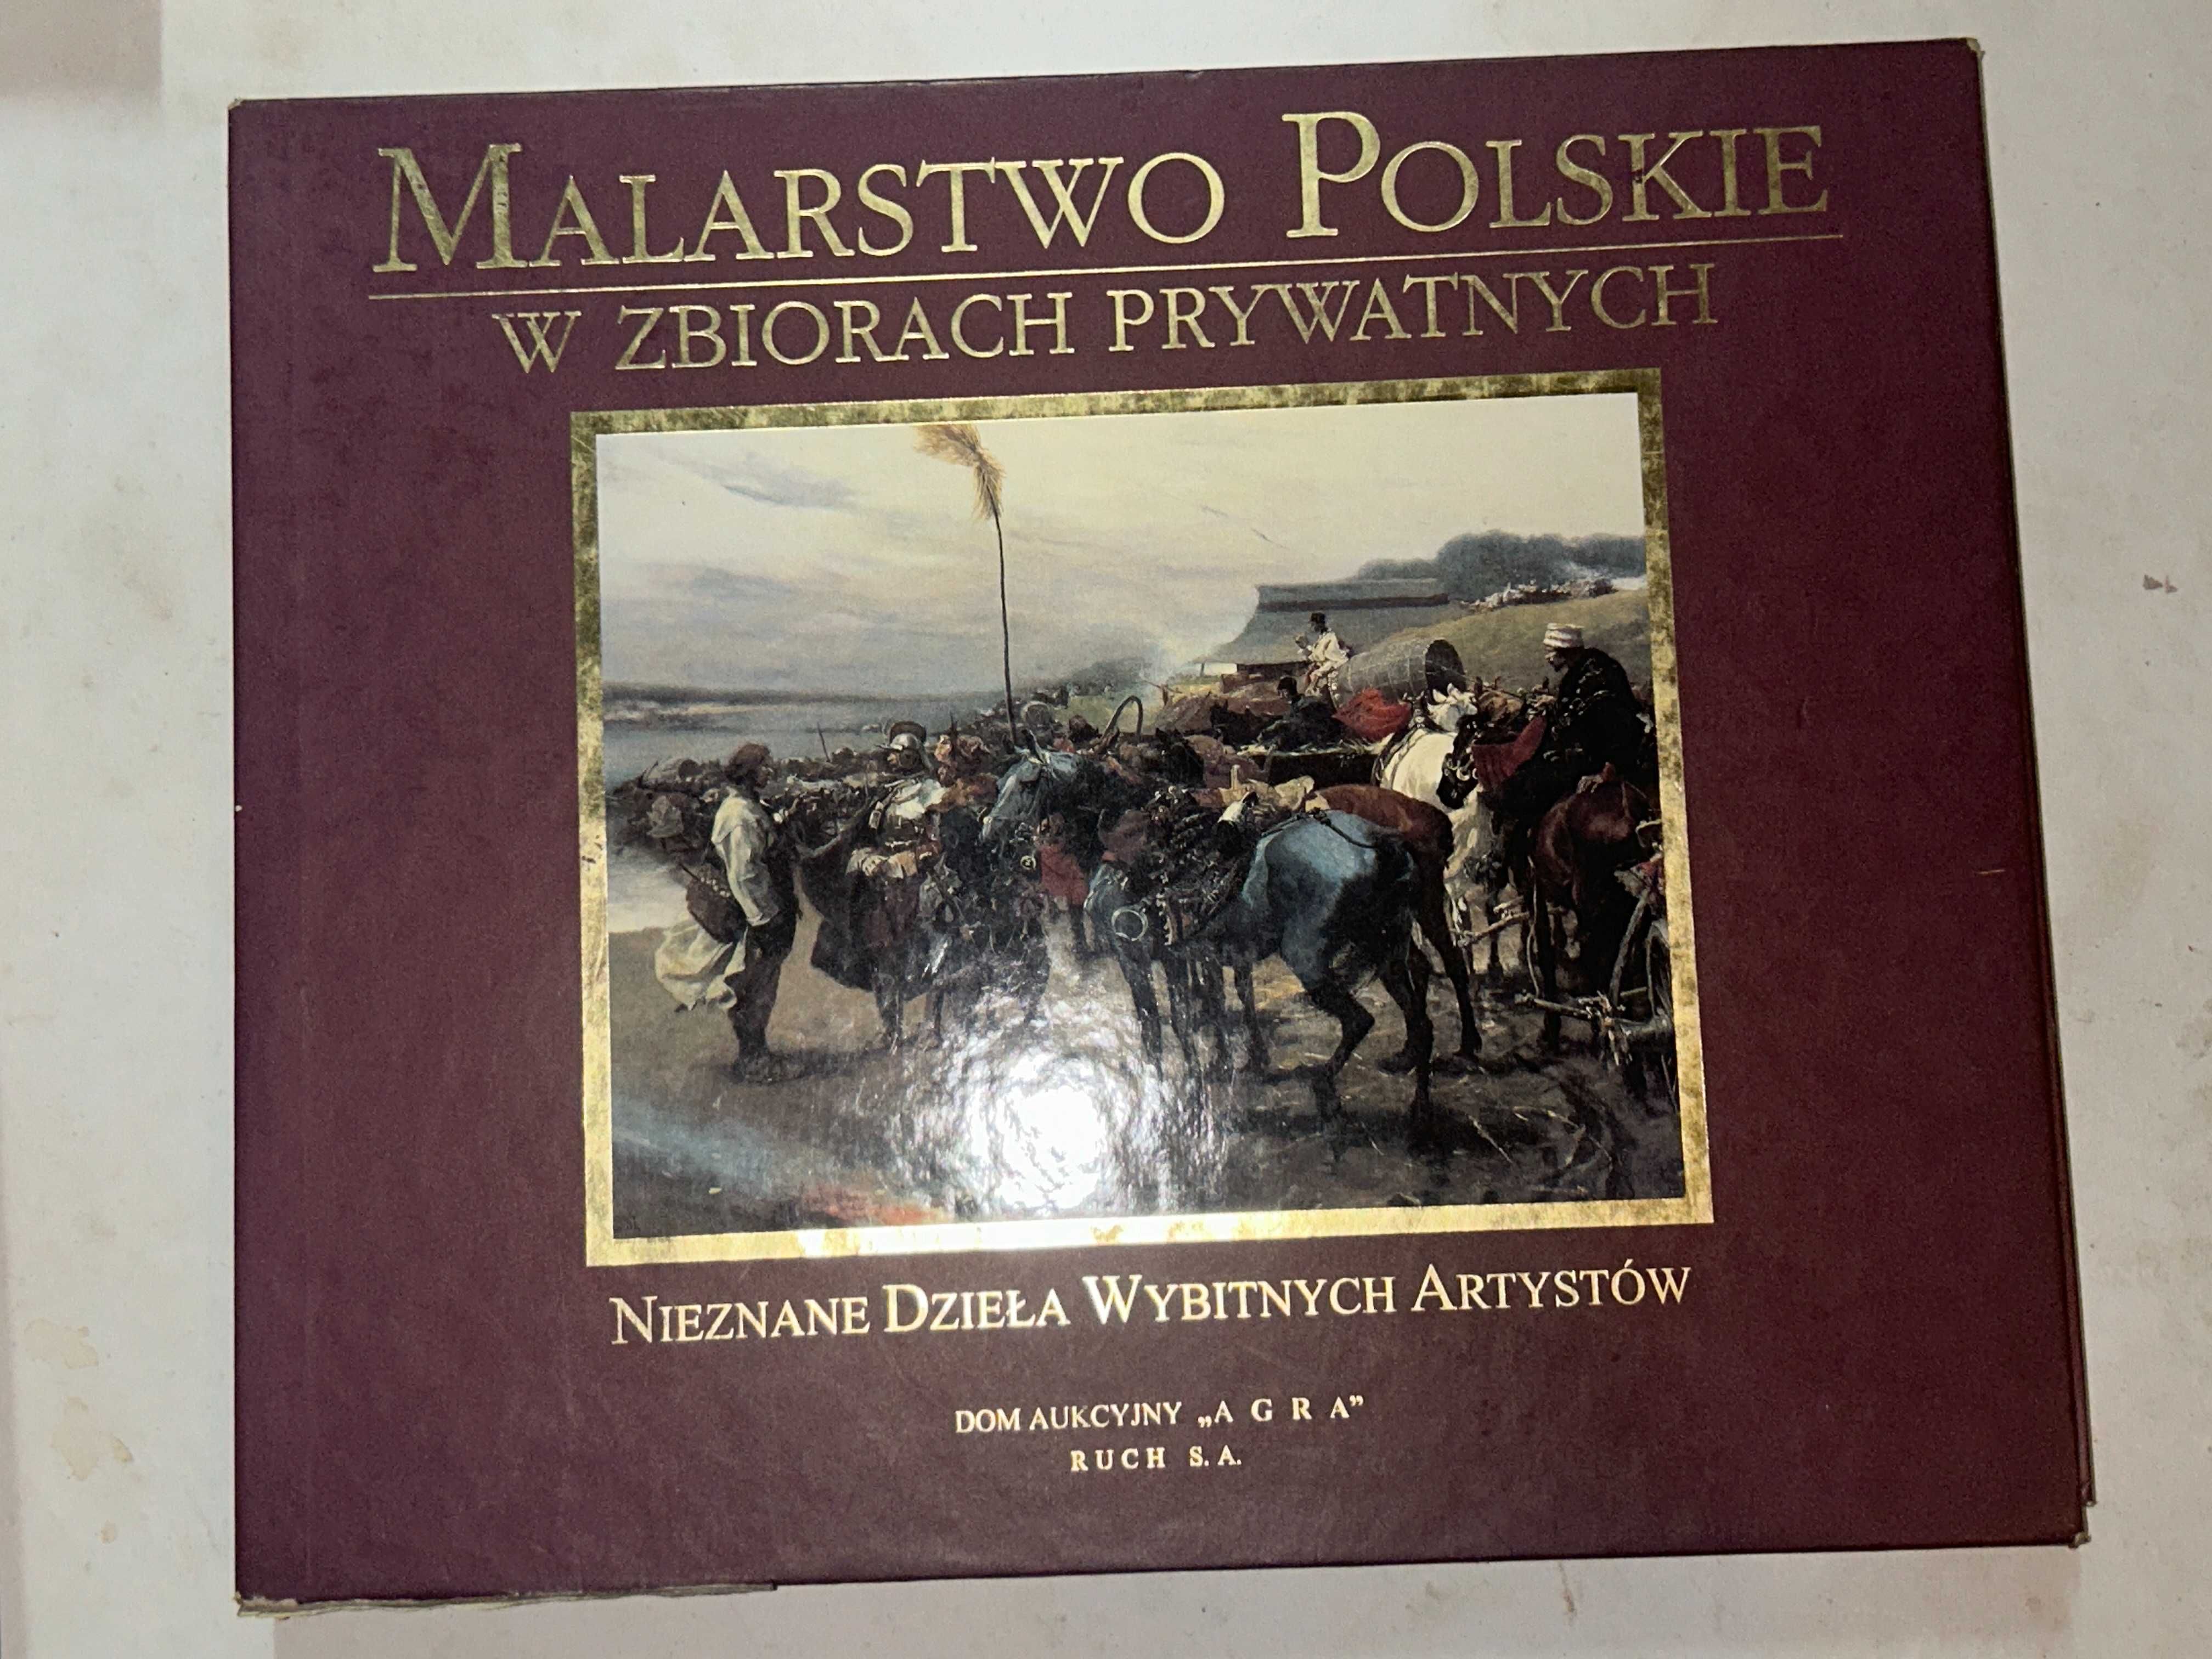 Malarstwo Polskie w zbiorach prywatnych Agra RUCH S.A.